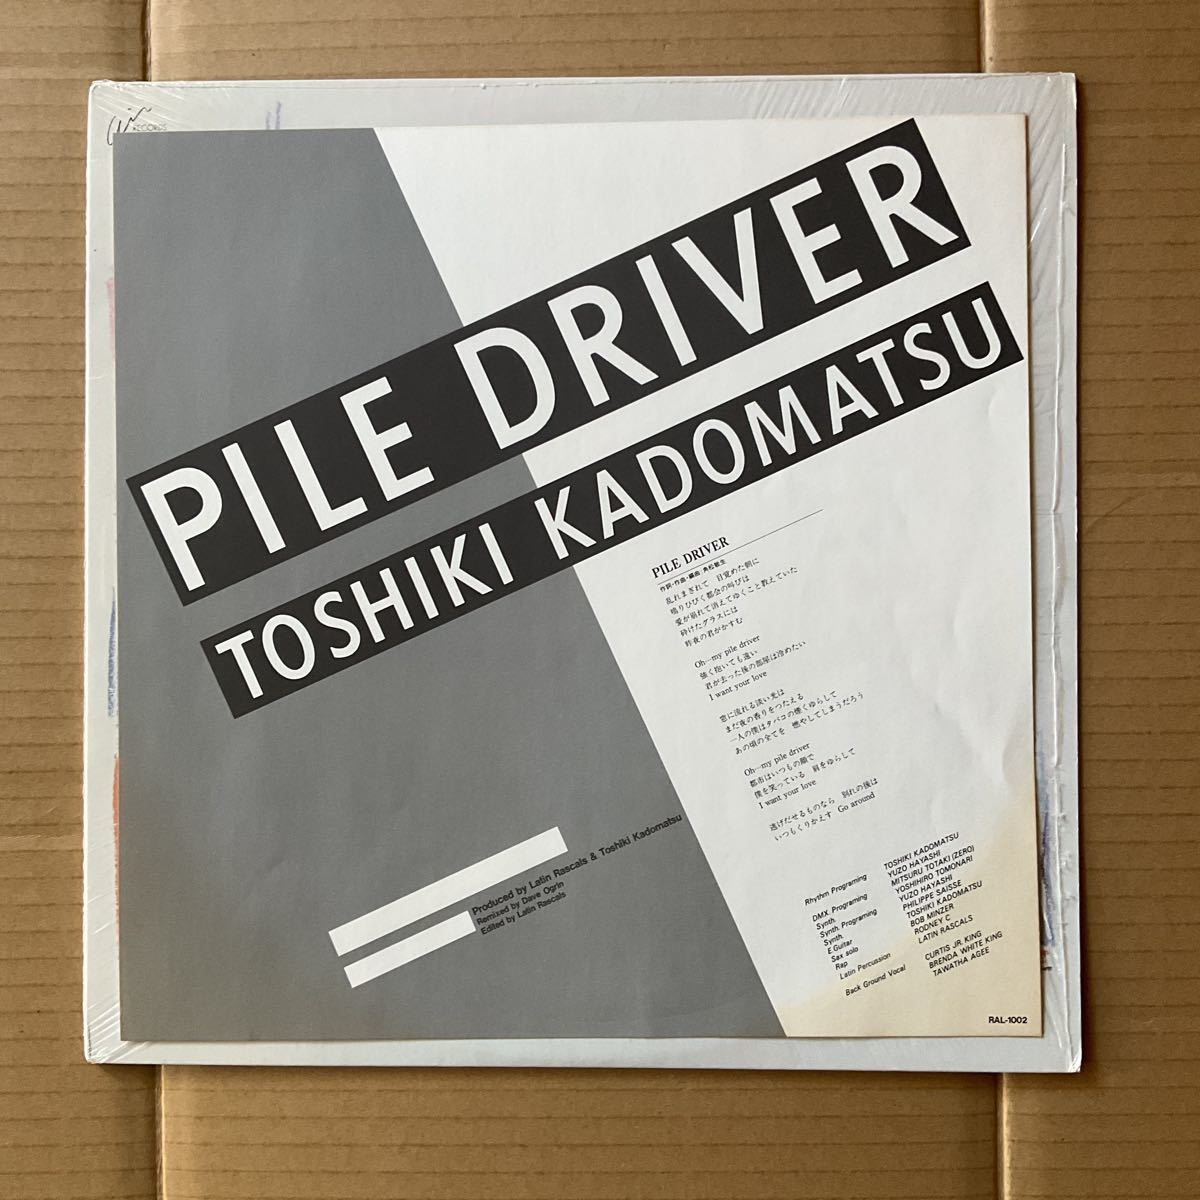 12インチ 角松敏生 TOSHIKI KADOMATSU - PILE DRIVER_画像5